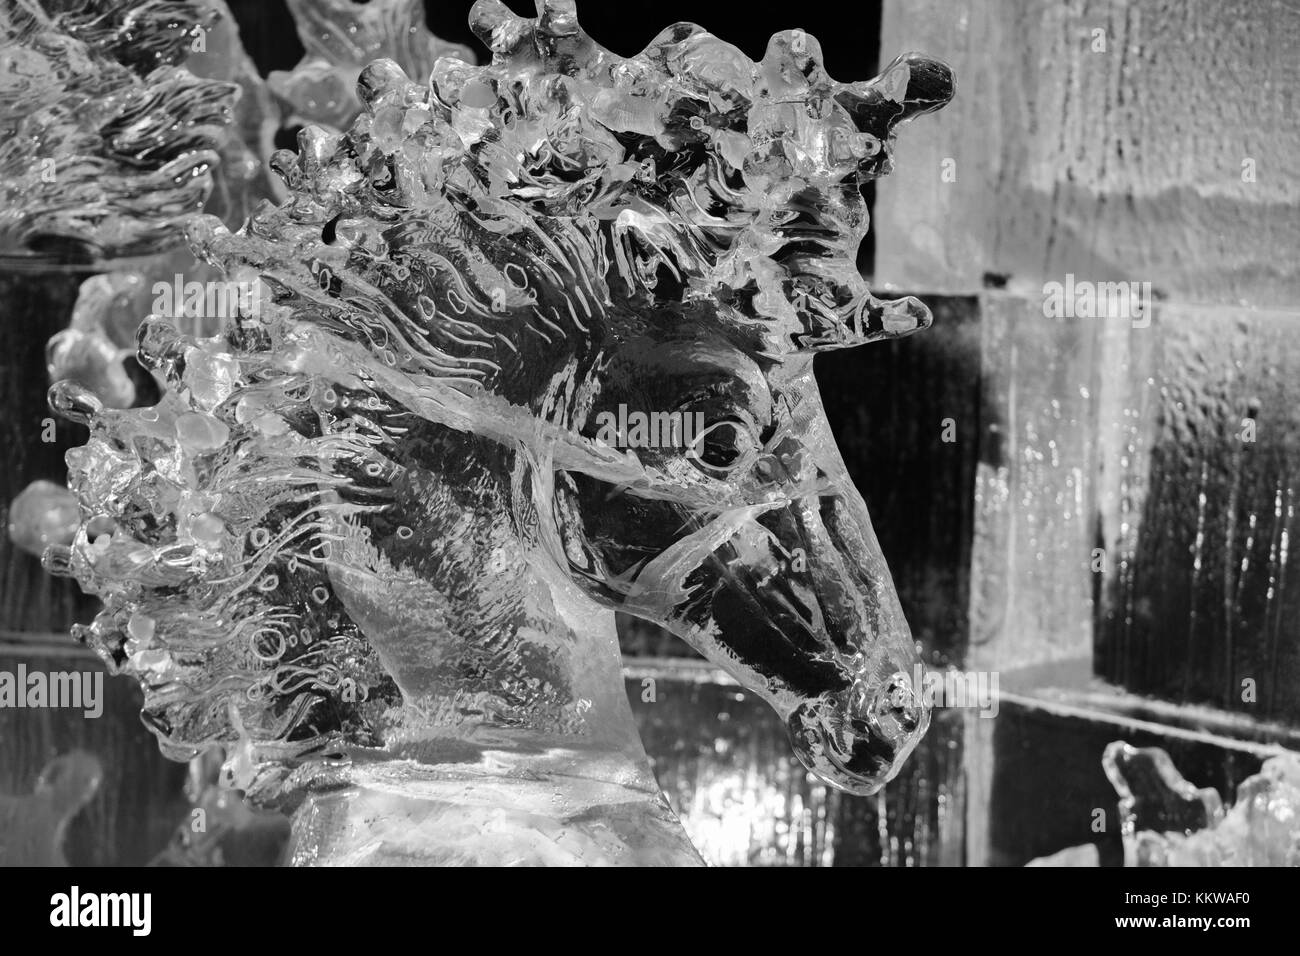 Sculpture de Glace Unicorn, une partie de 't'il Ice Adventure' produit par Achille & Hamilton Ice pour Edinburgh's Festival de Noël 1.12.17 Banque D'Images